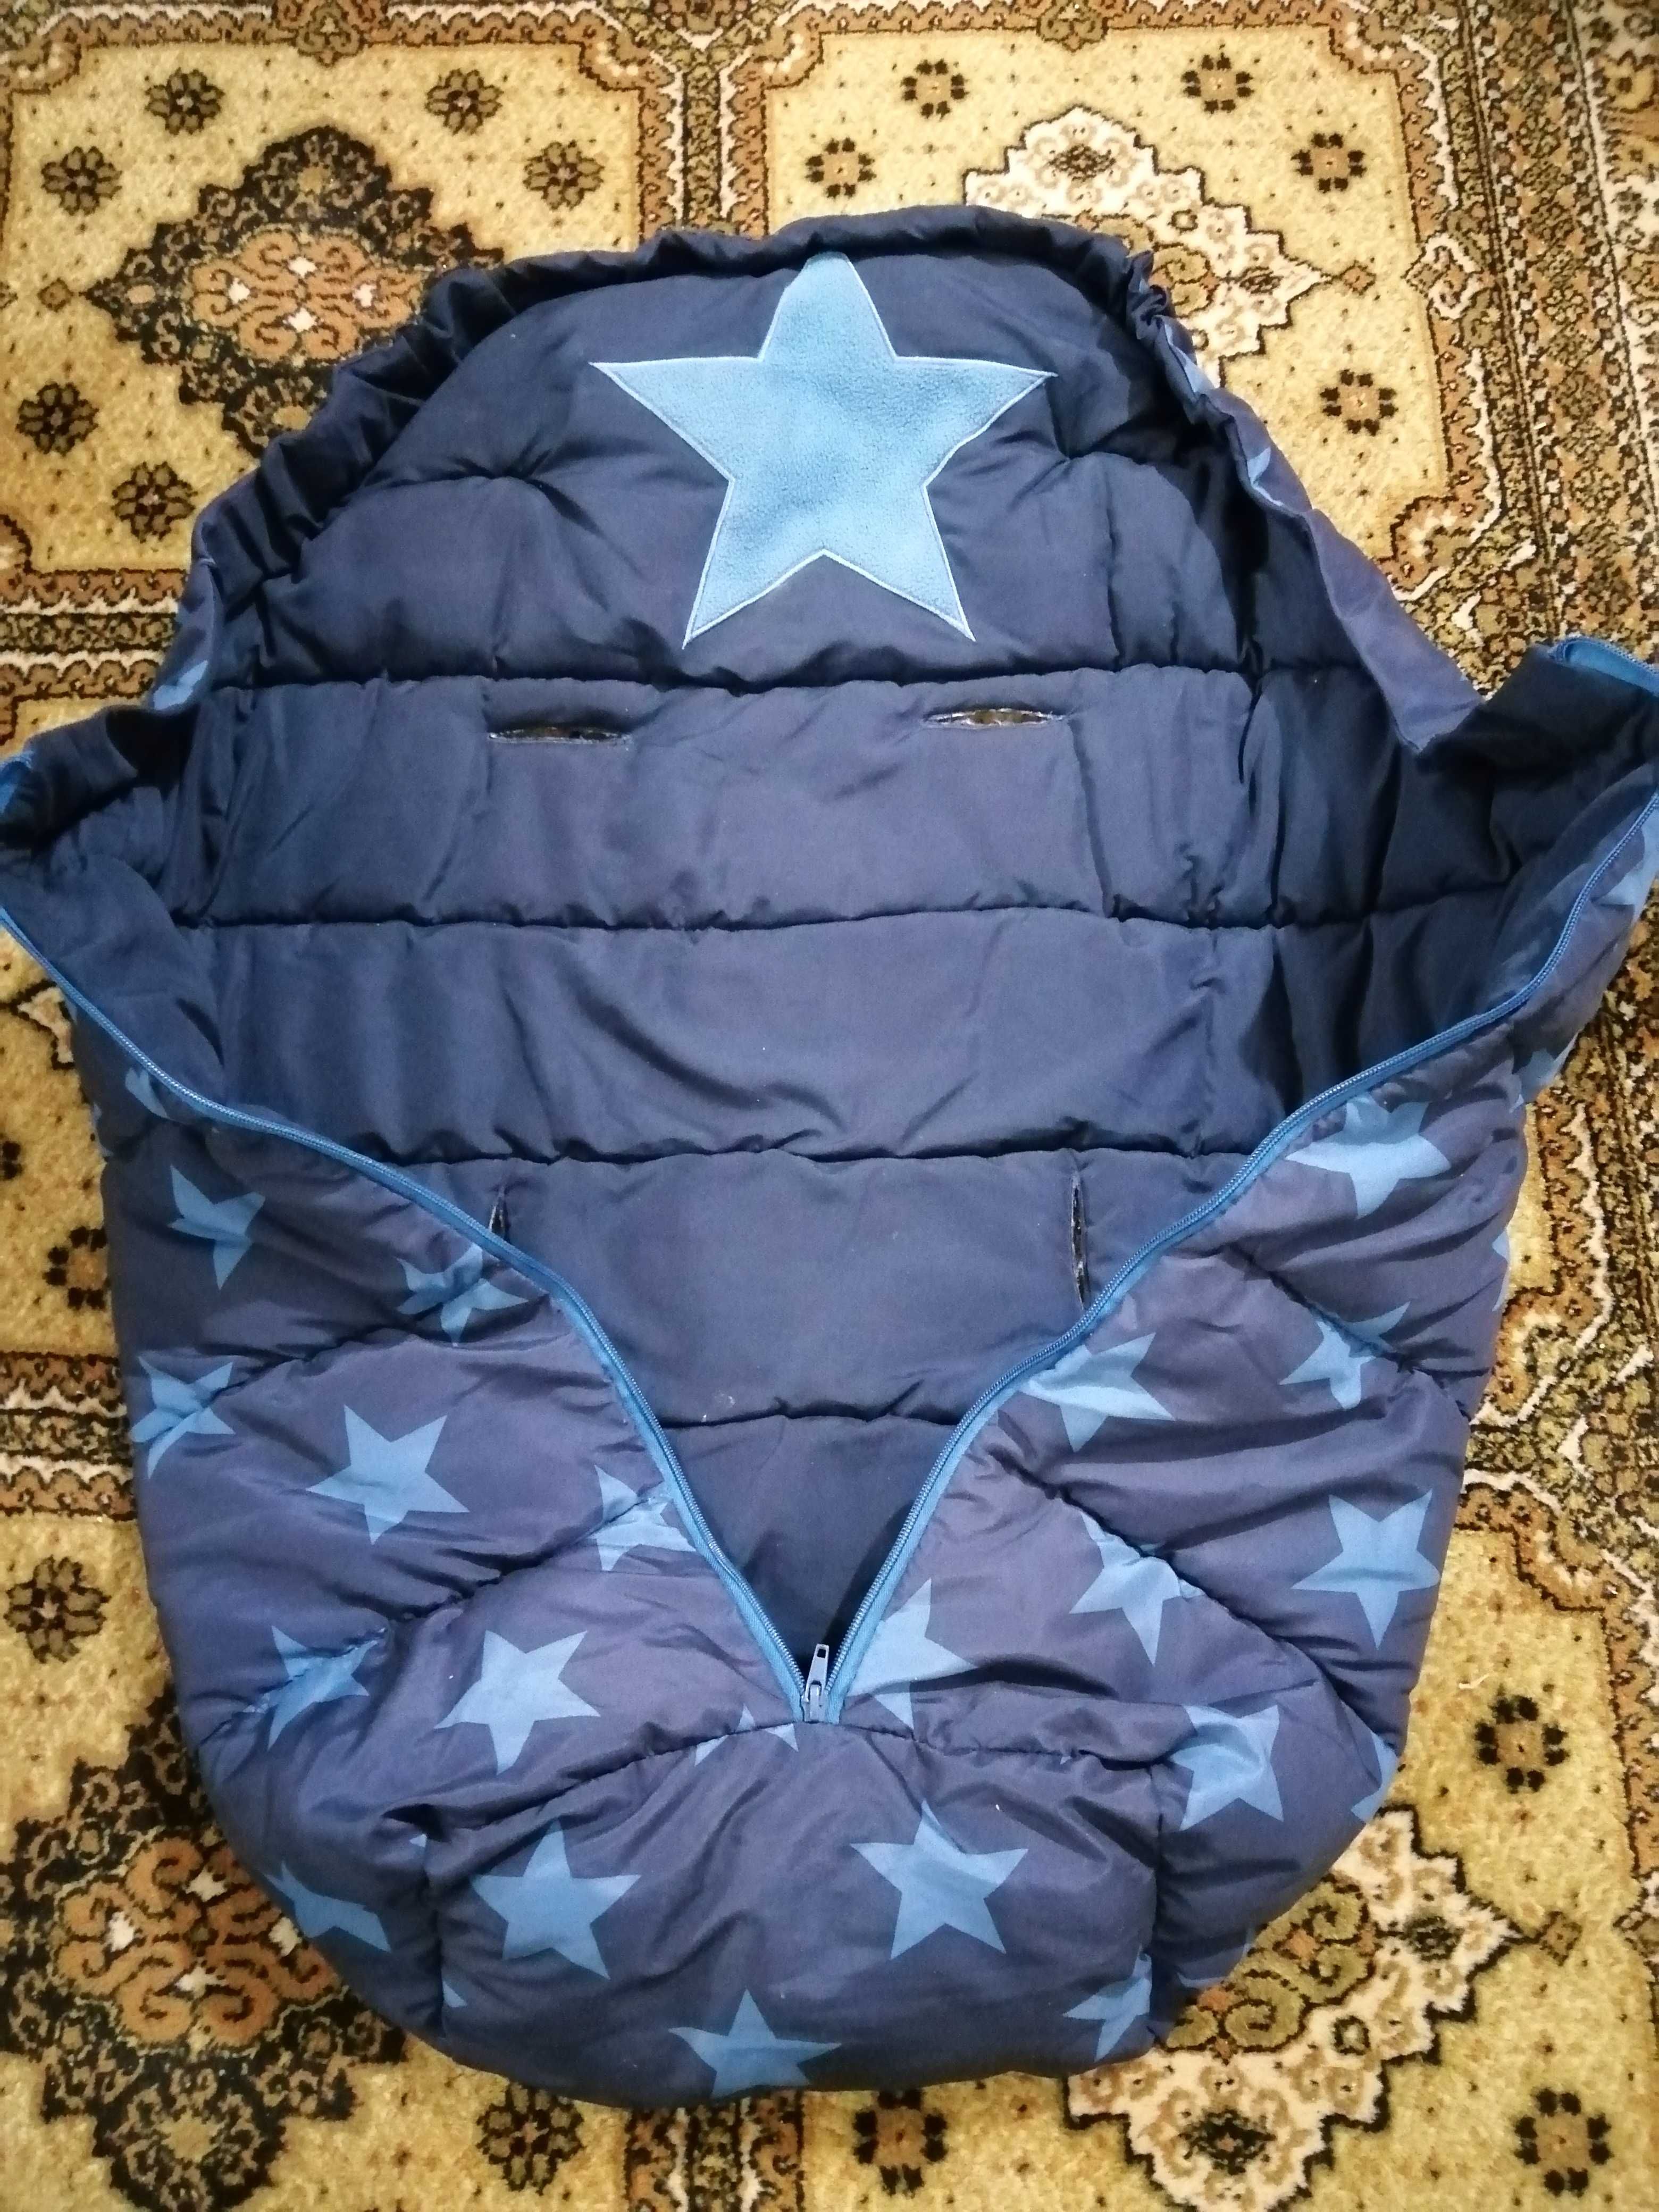 Vand sac de dormit pentru copil